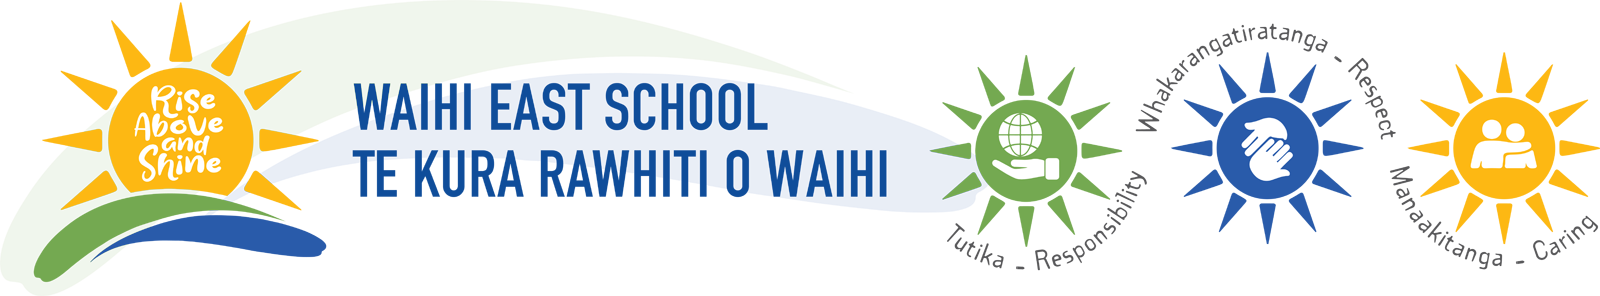 Waihi East School